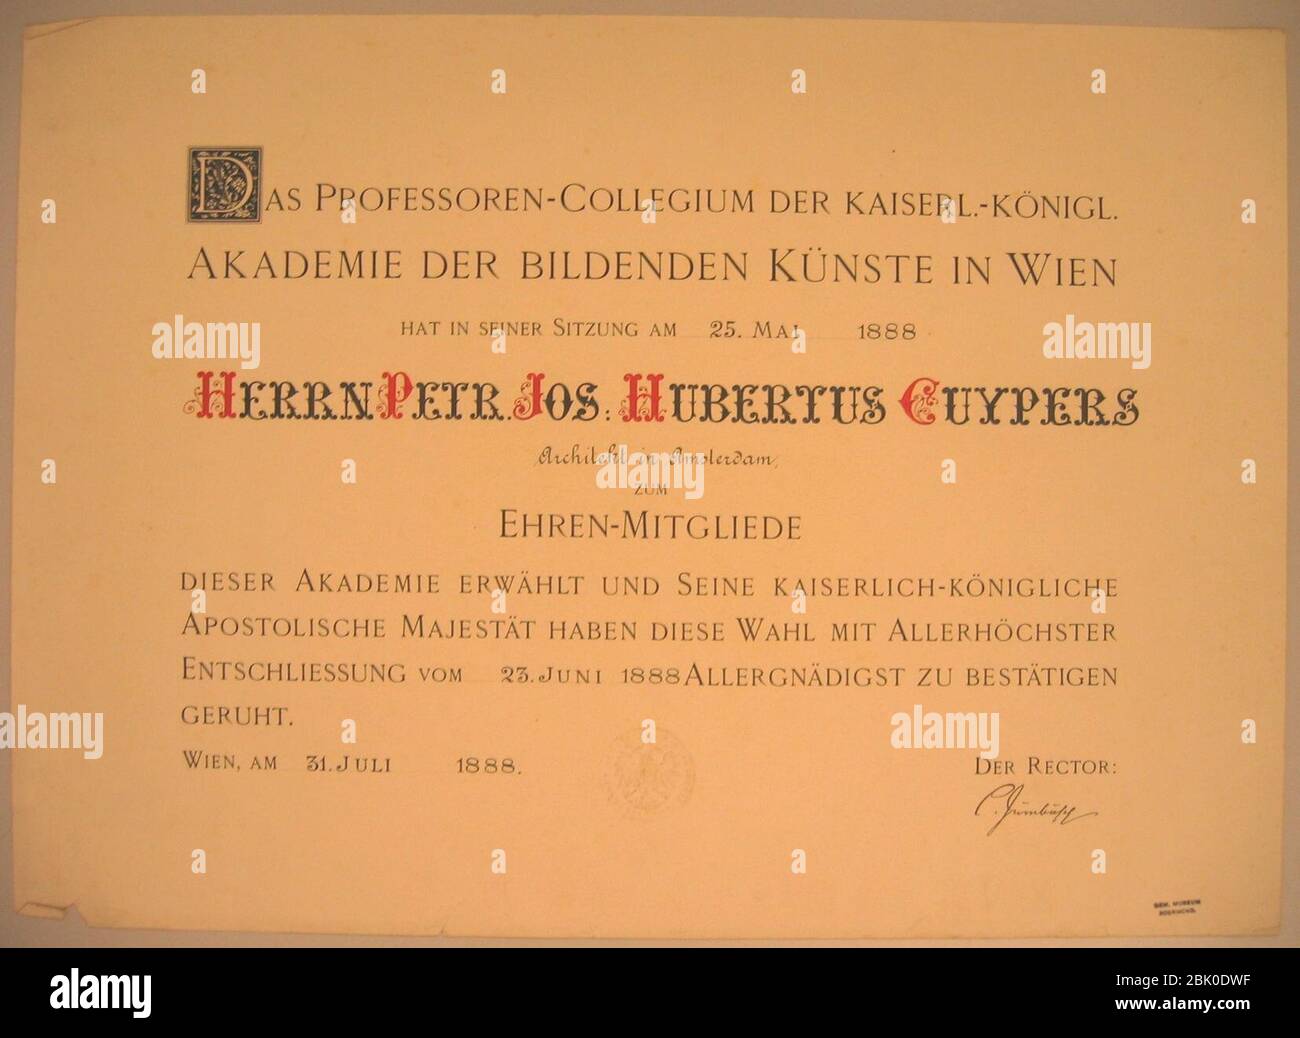 Certificat d'adhésion honorifique de Pierre Cuypers de l'Académie des Beaux-Arts Vienne Cuypershuis 0460. Banque D'Images